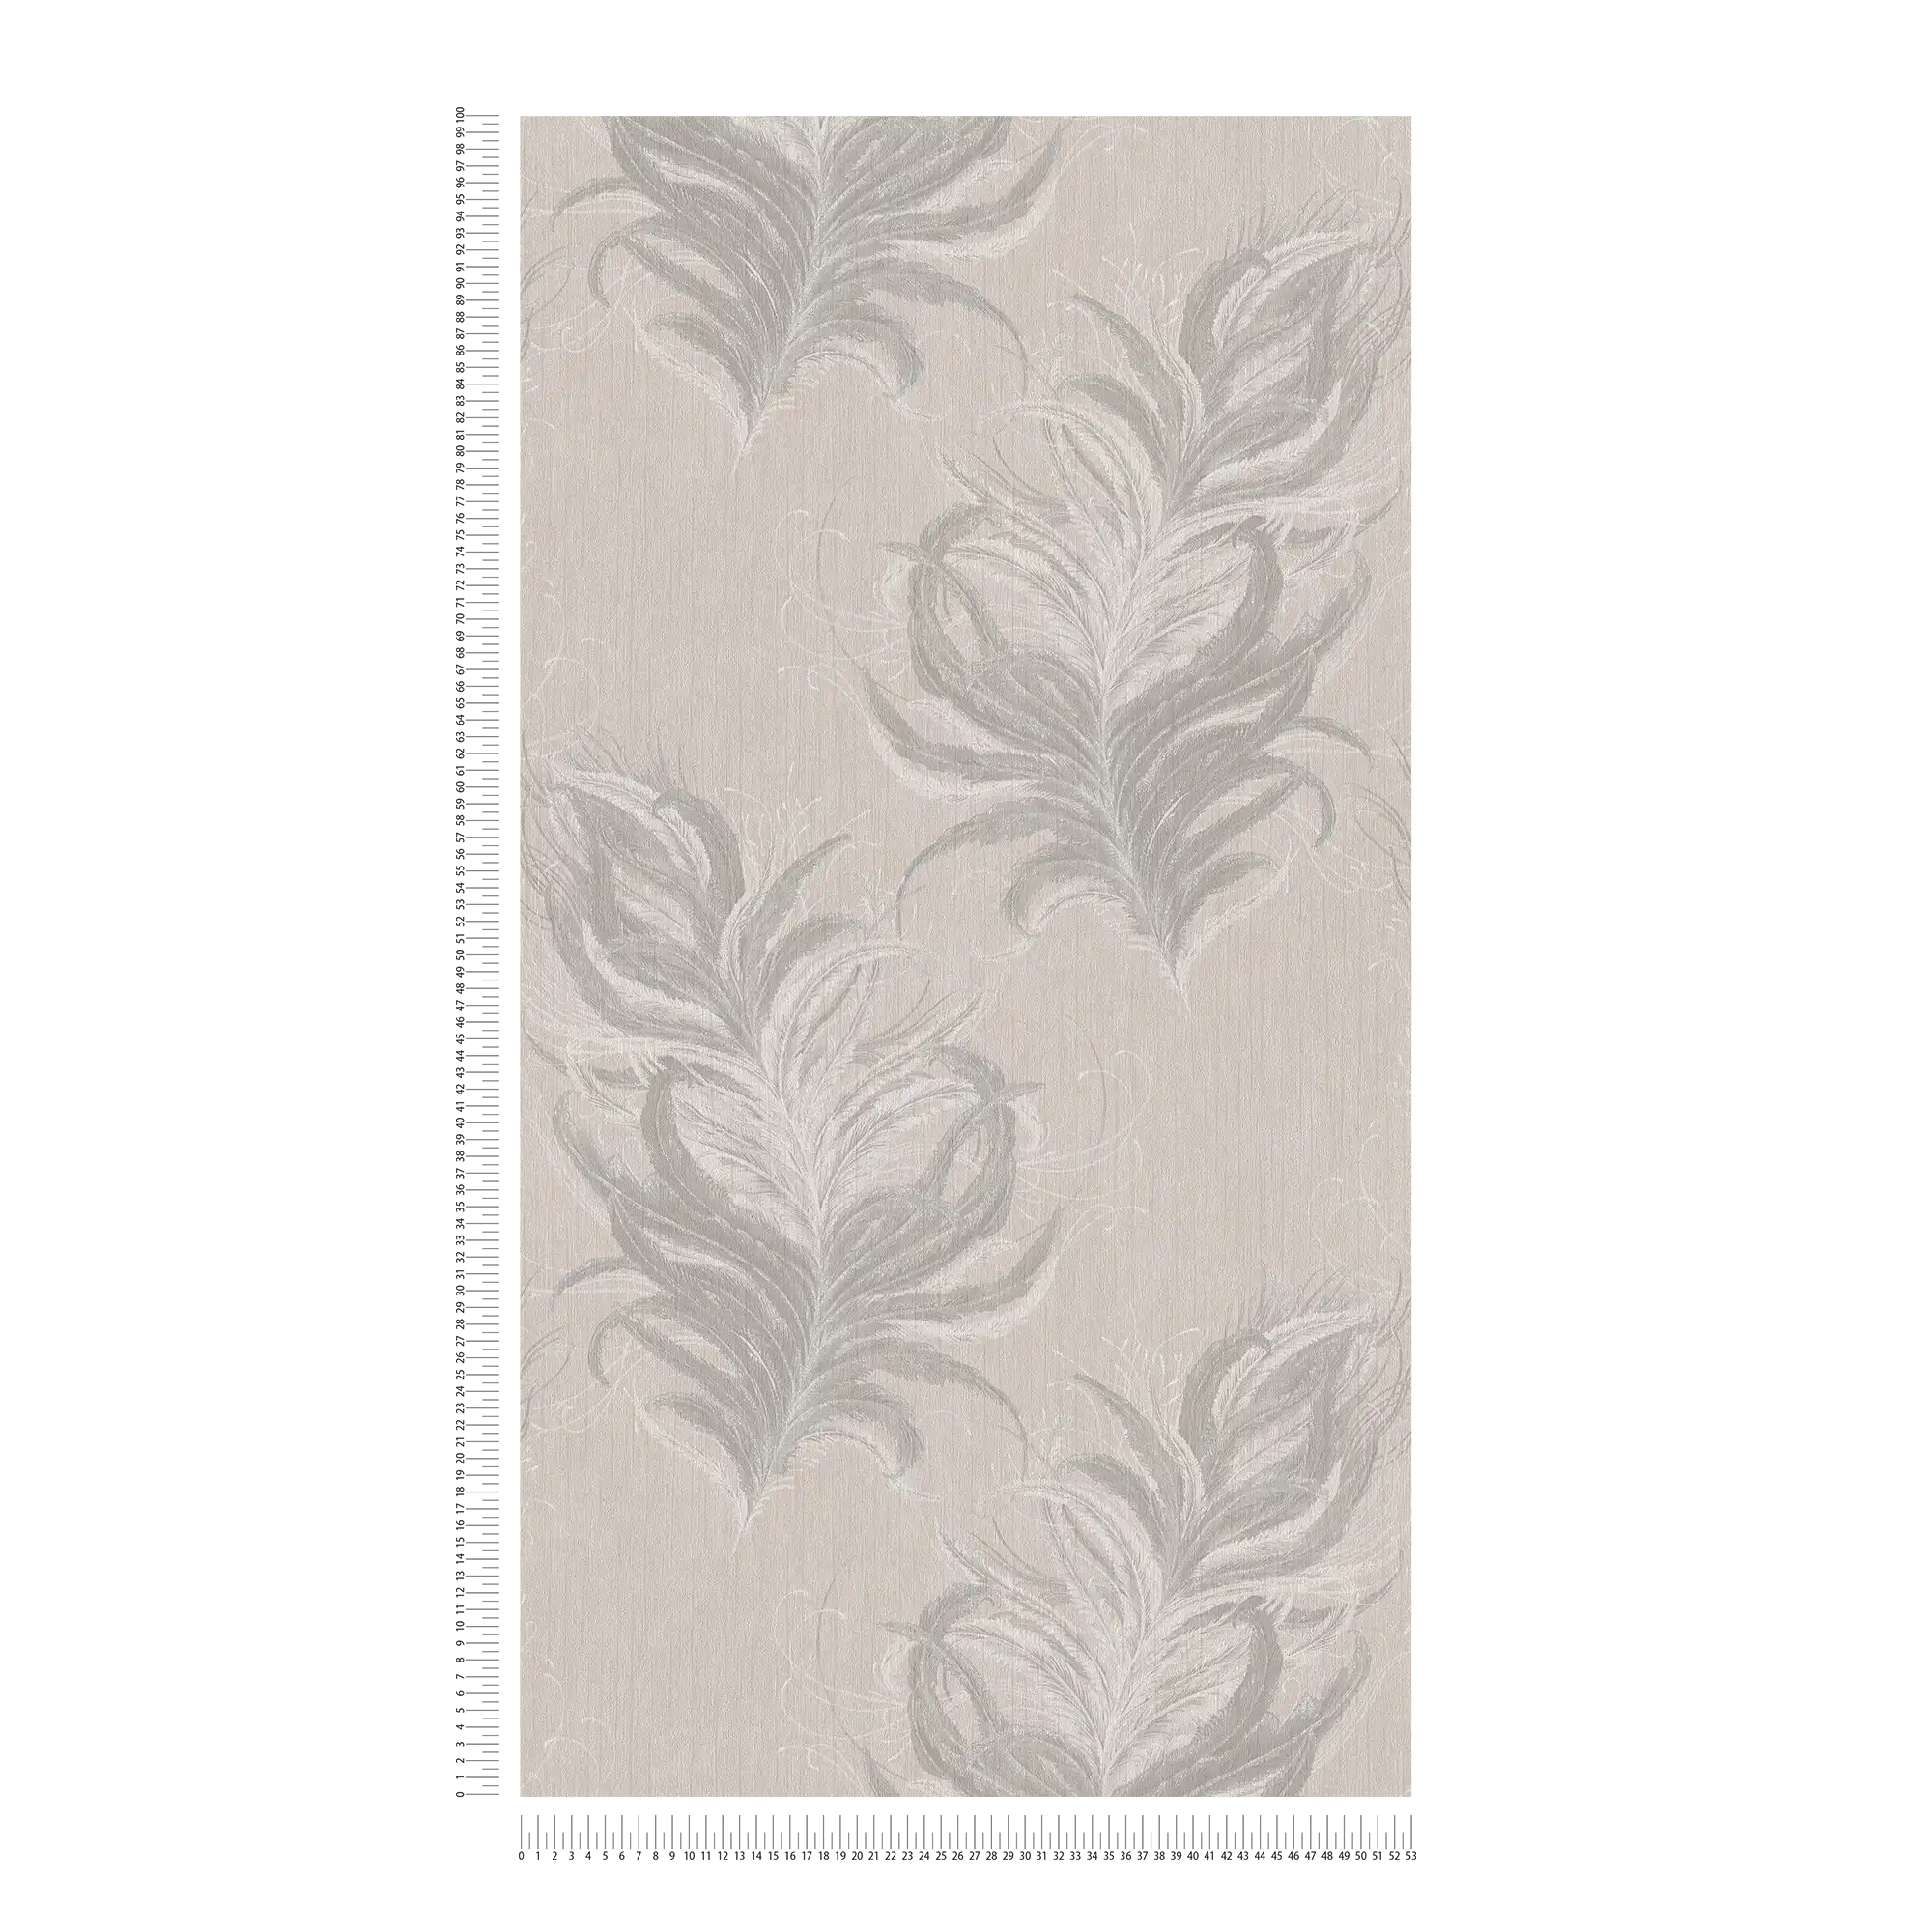             Vliestapete mit Federn Design & Struktur Glanzeffekt – Grau, Weiß
        